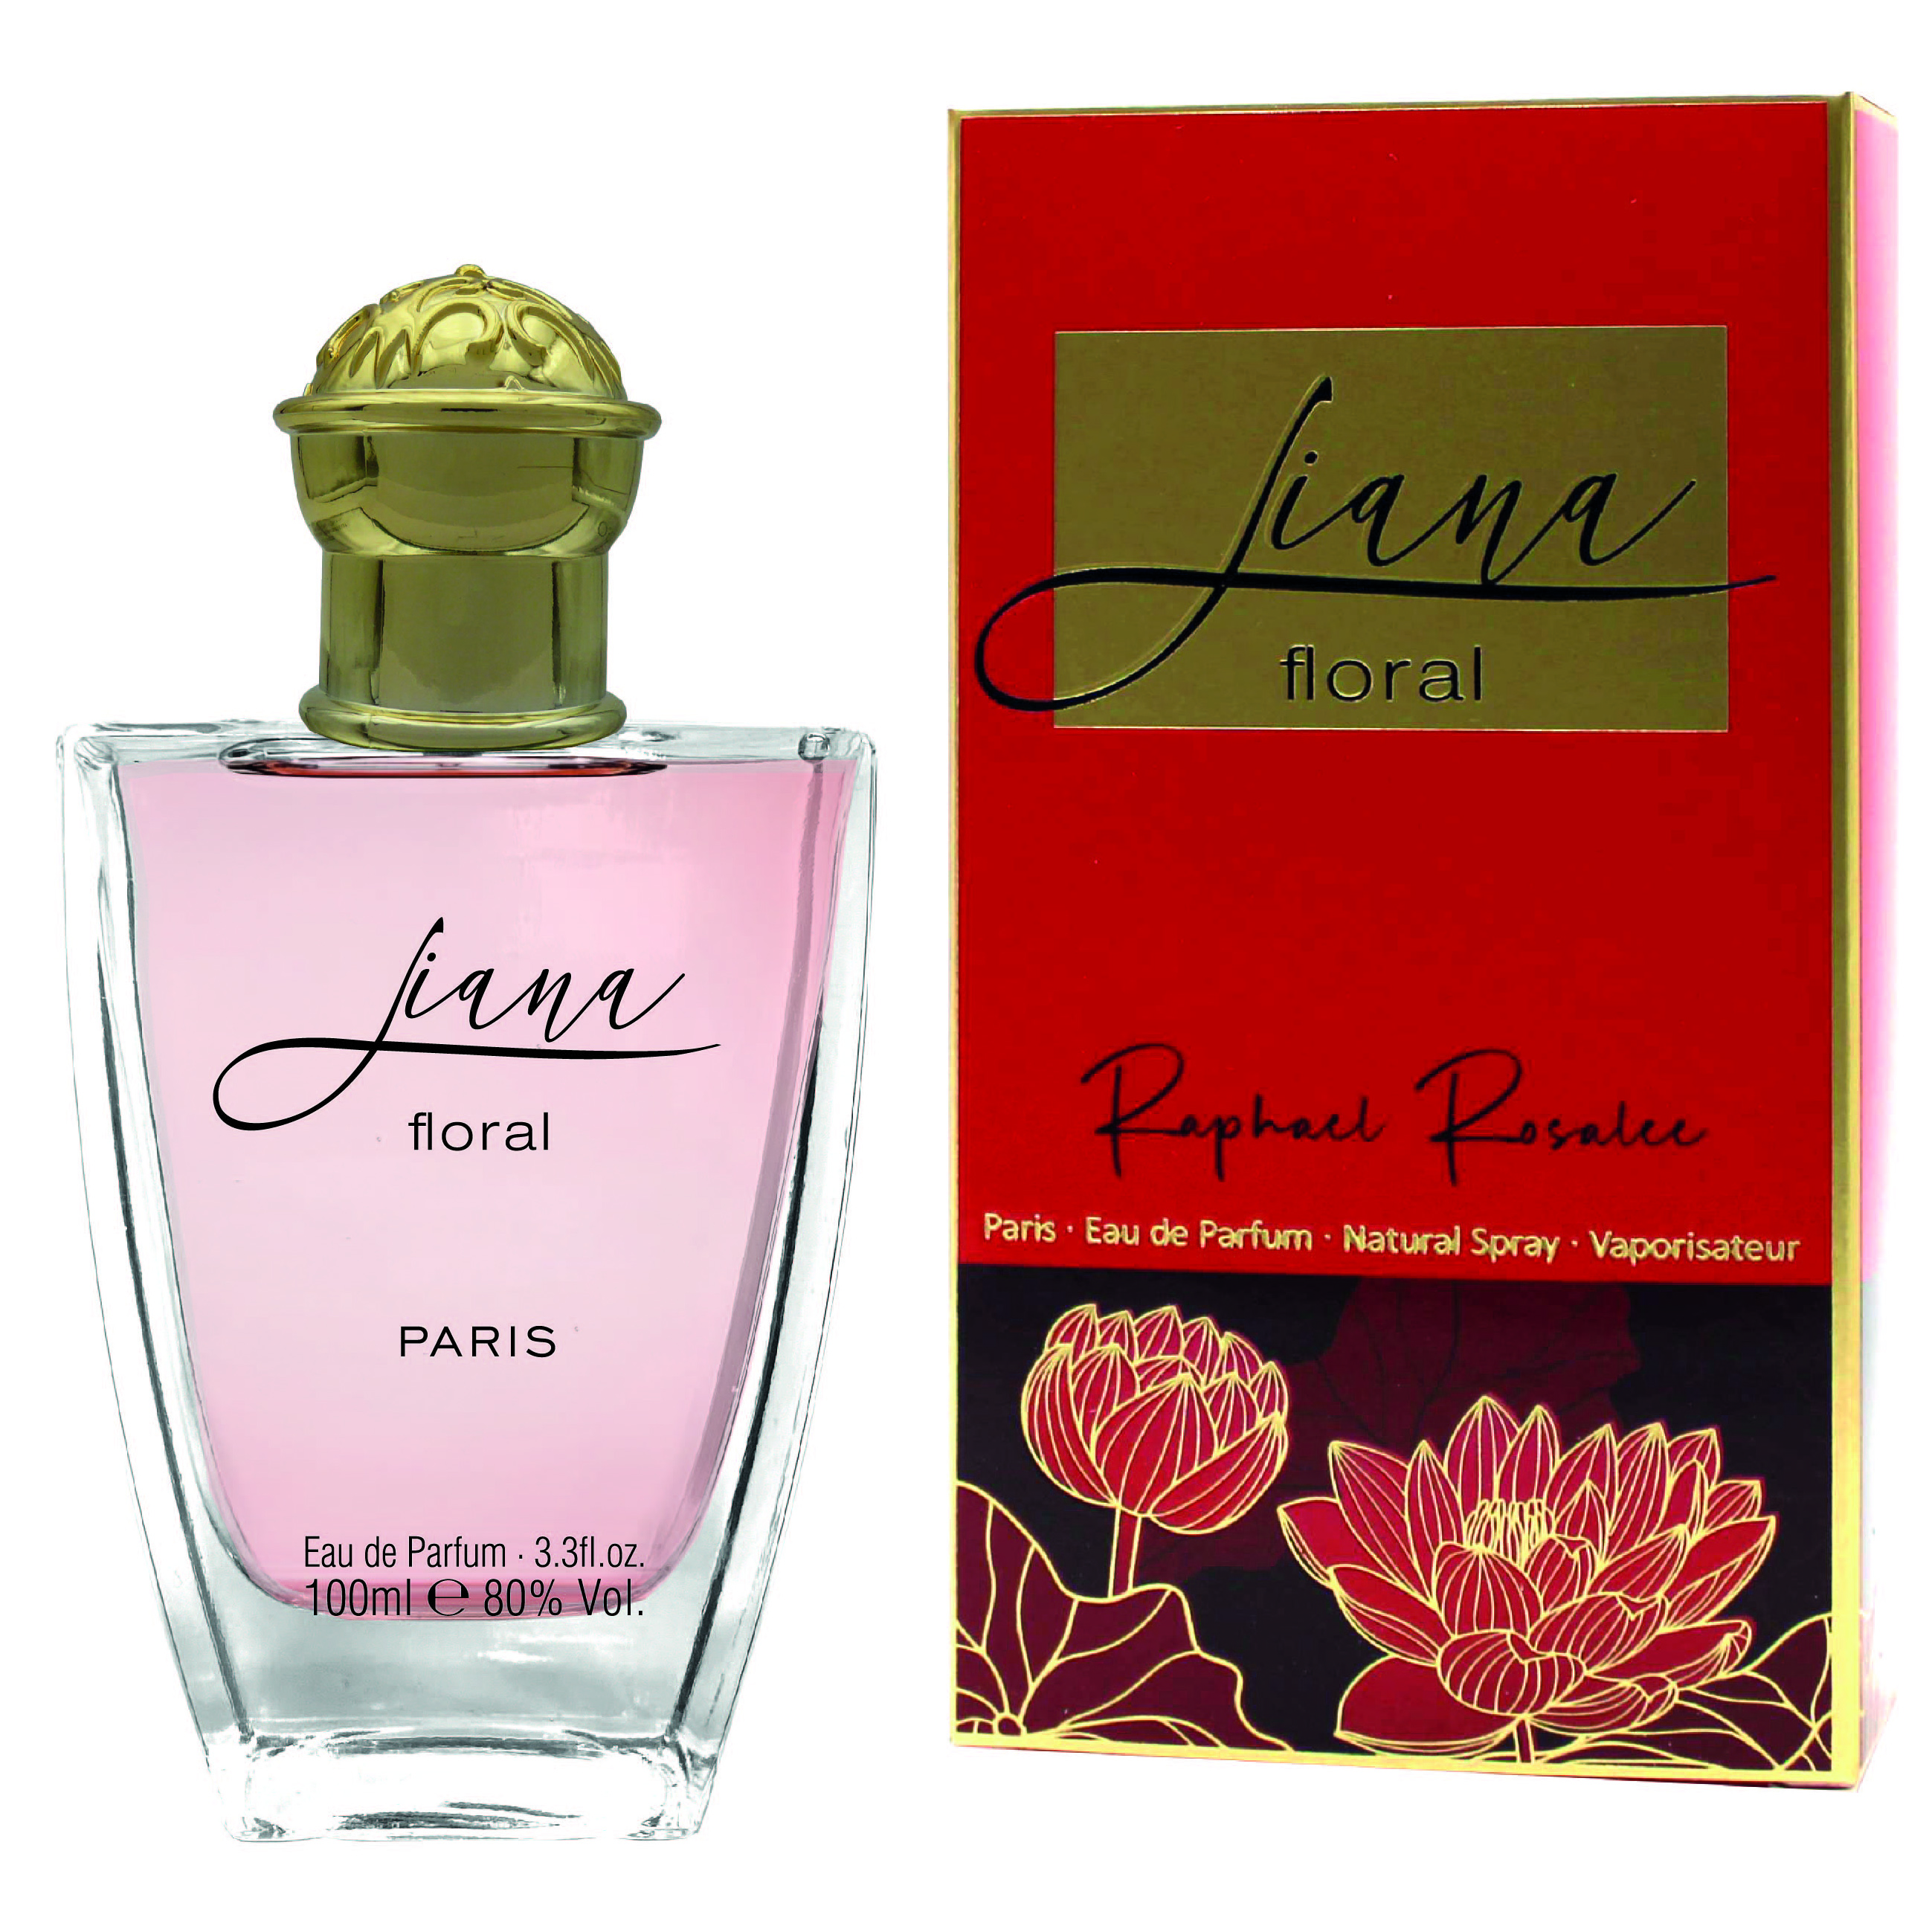     Raphael Rosalee Cosmetics Liana Floral femme/women Eau de Parfum 100ml Les exclusifs Parfum aus der Collection Privee - Made in France